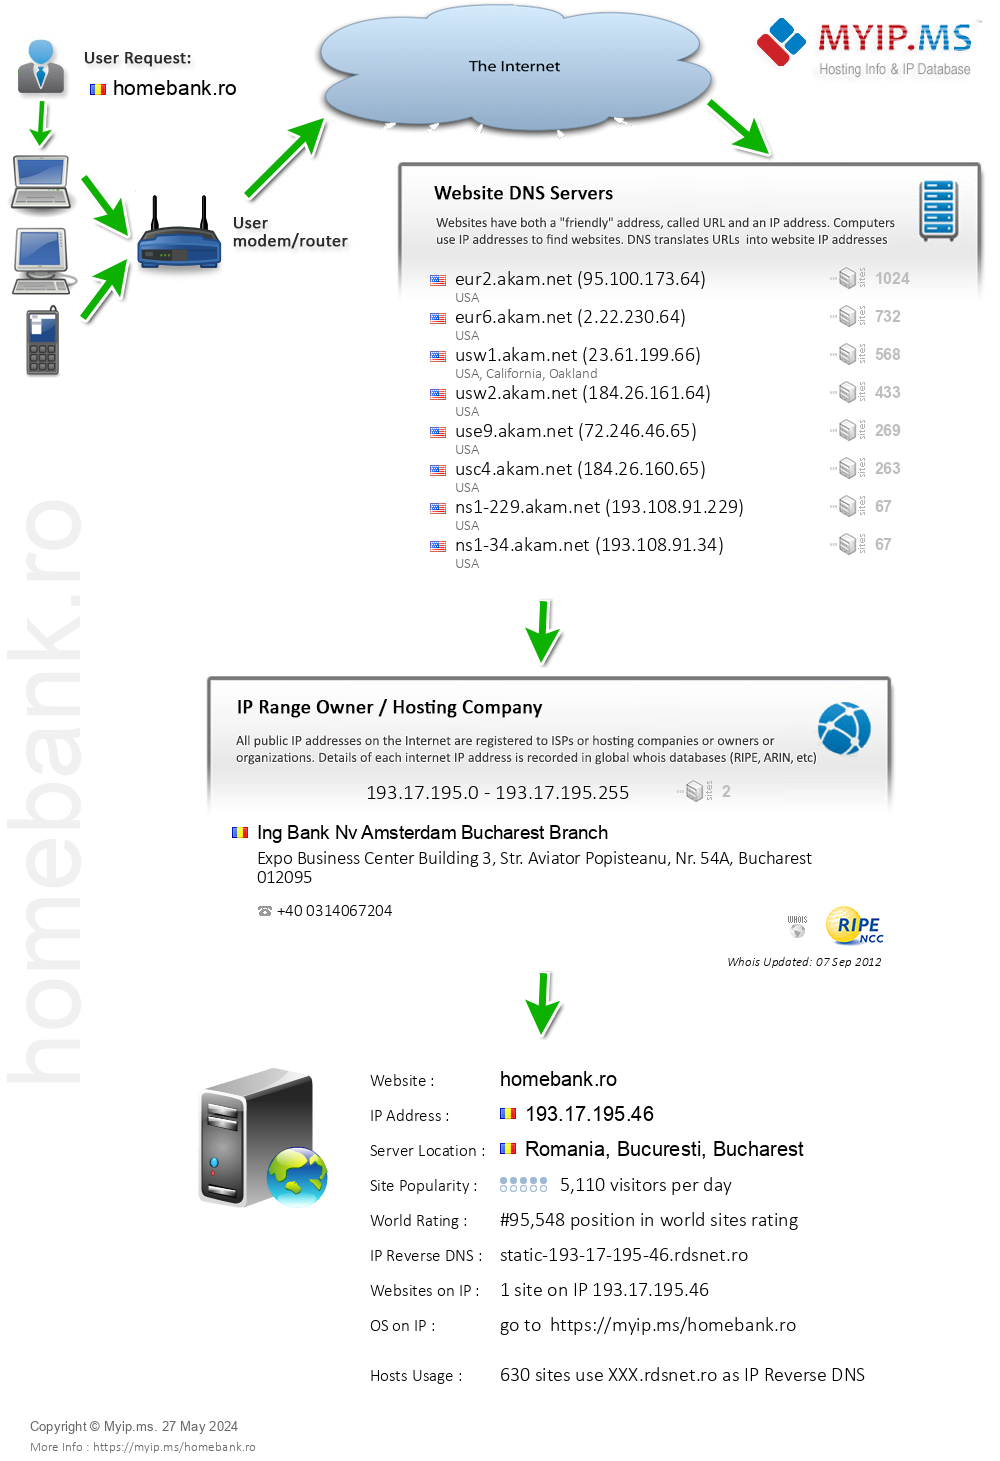 Homebank.ro - Website Hosting Visual IP Diagram